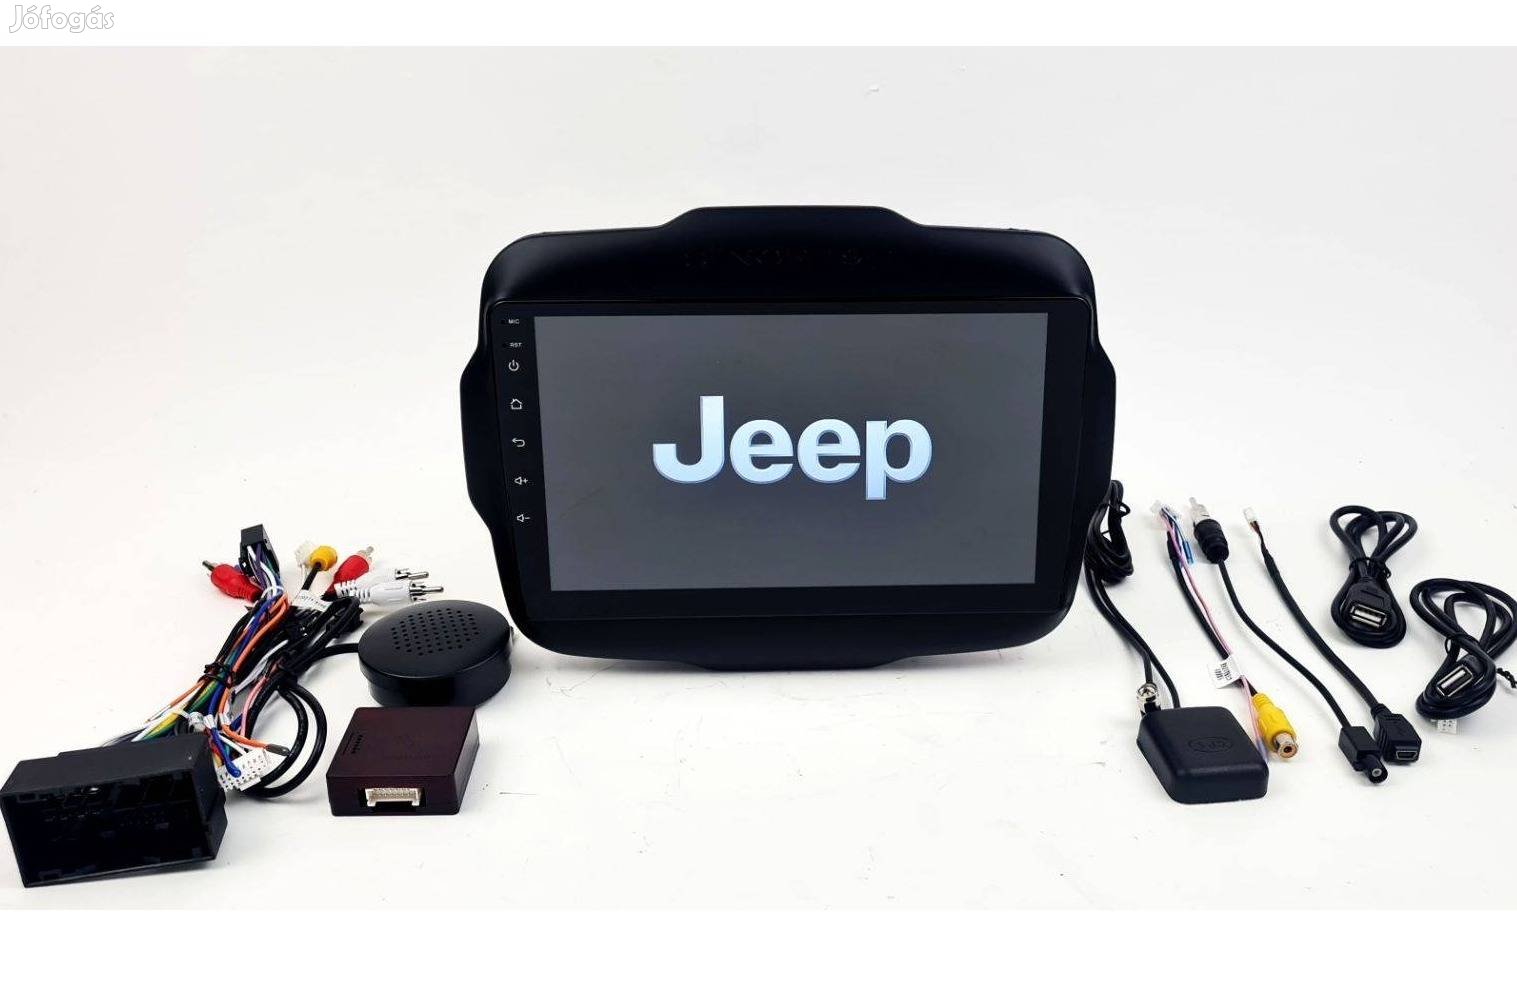 Jeep Renegade Android autórádió fejegység gyári helyre 1-4GB Carplay